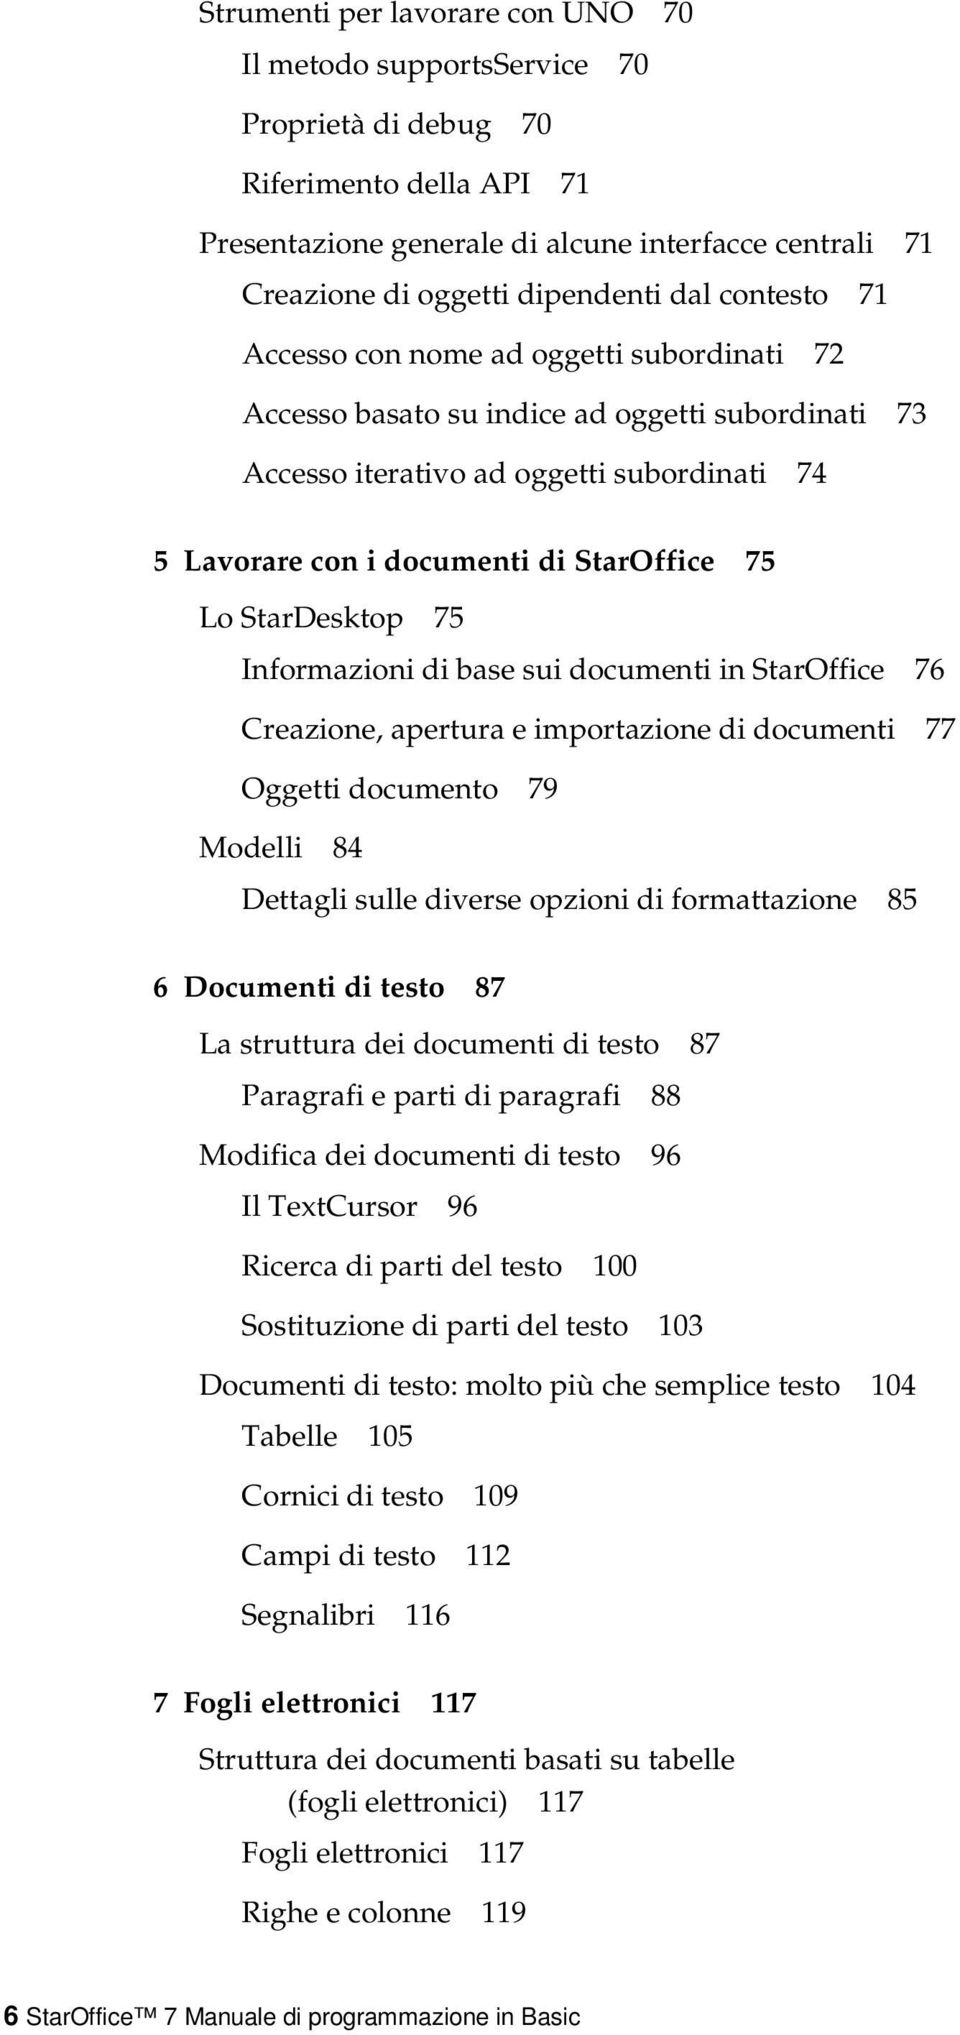 Lo StarDesktop 75 Informazioni di base sui documenti in StarOffice 76 Creazione, apertura e importazione di documenti 77 Oggetti documento 79 Modelli 84 Dettagli sulle diverse opzioni di